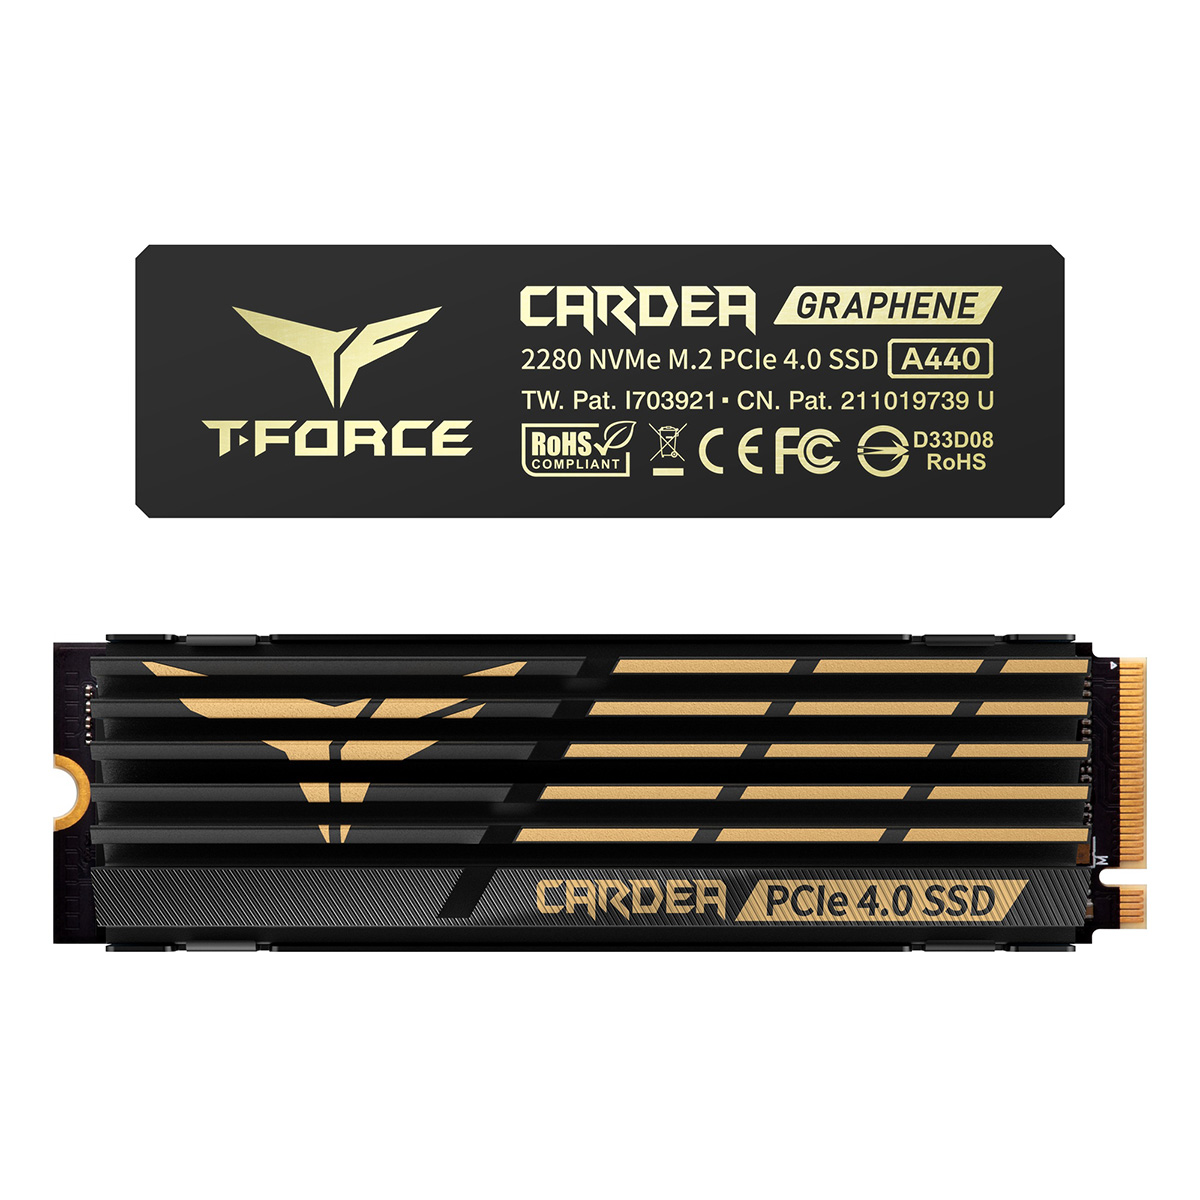 ■CARDEA A440 PCIe Gen4 x4 NVMe M.2 SSD 1TB ; 7000 MB/s / 5500MB/s ; 650K/700K IOPS; 700TBW